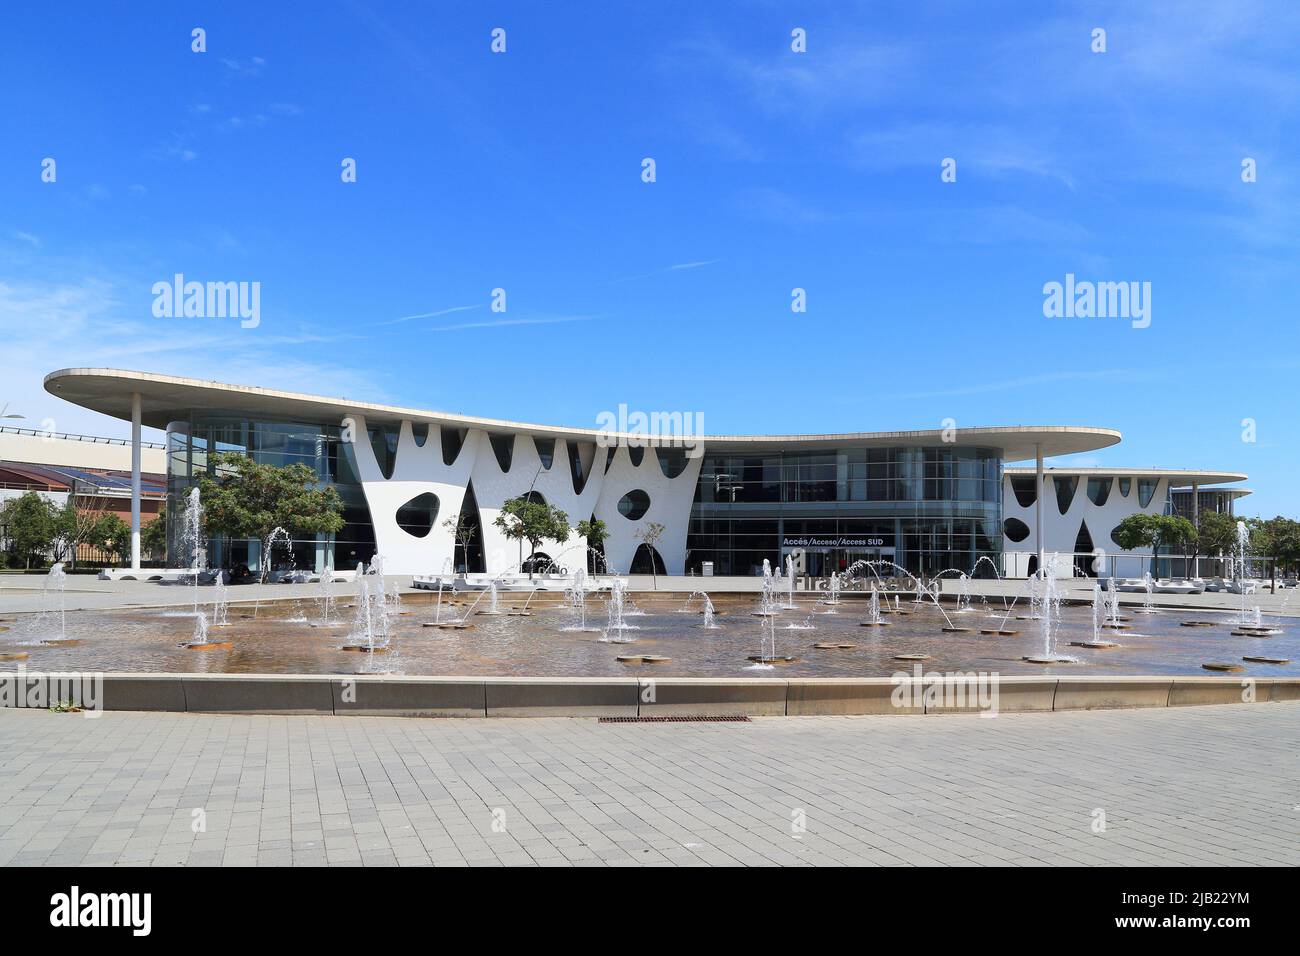 BARCELLONA, SPAGNA - 9 MAGGIO 2017: Questo è il moderno centro congressi Fira Barcelona Gran Via. Foto Stock